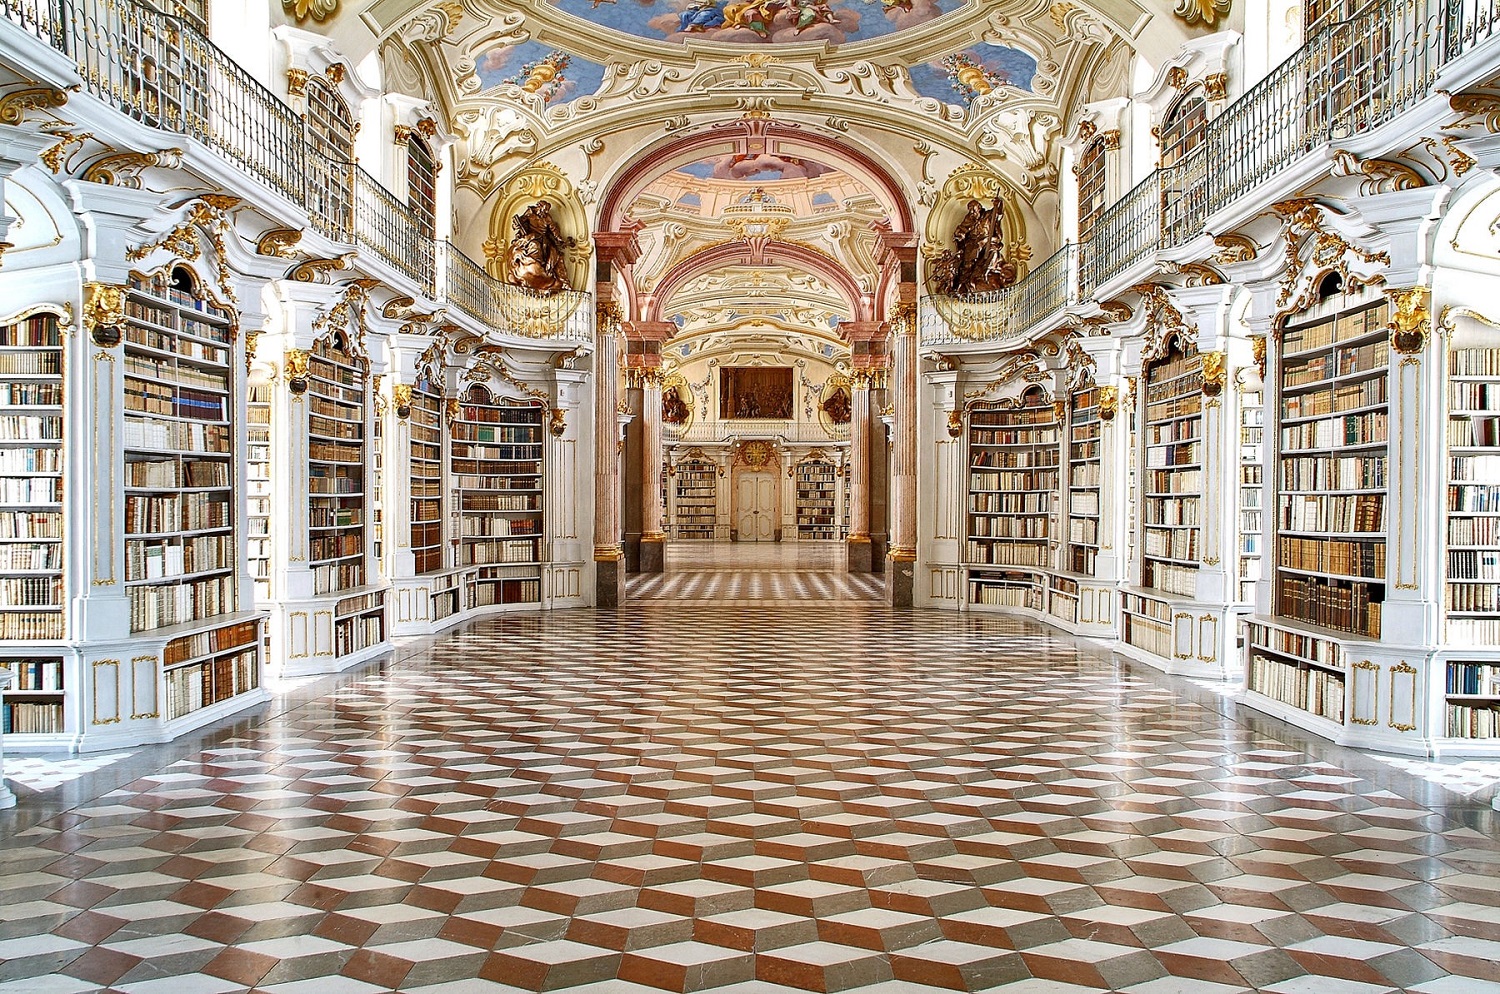 Stift Admont Library Austria 1500.jpg